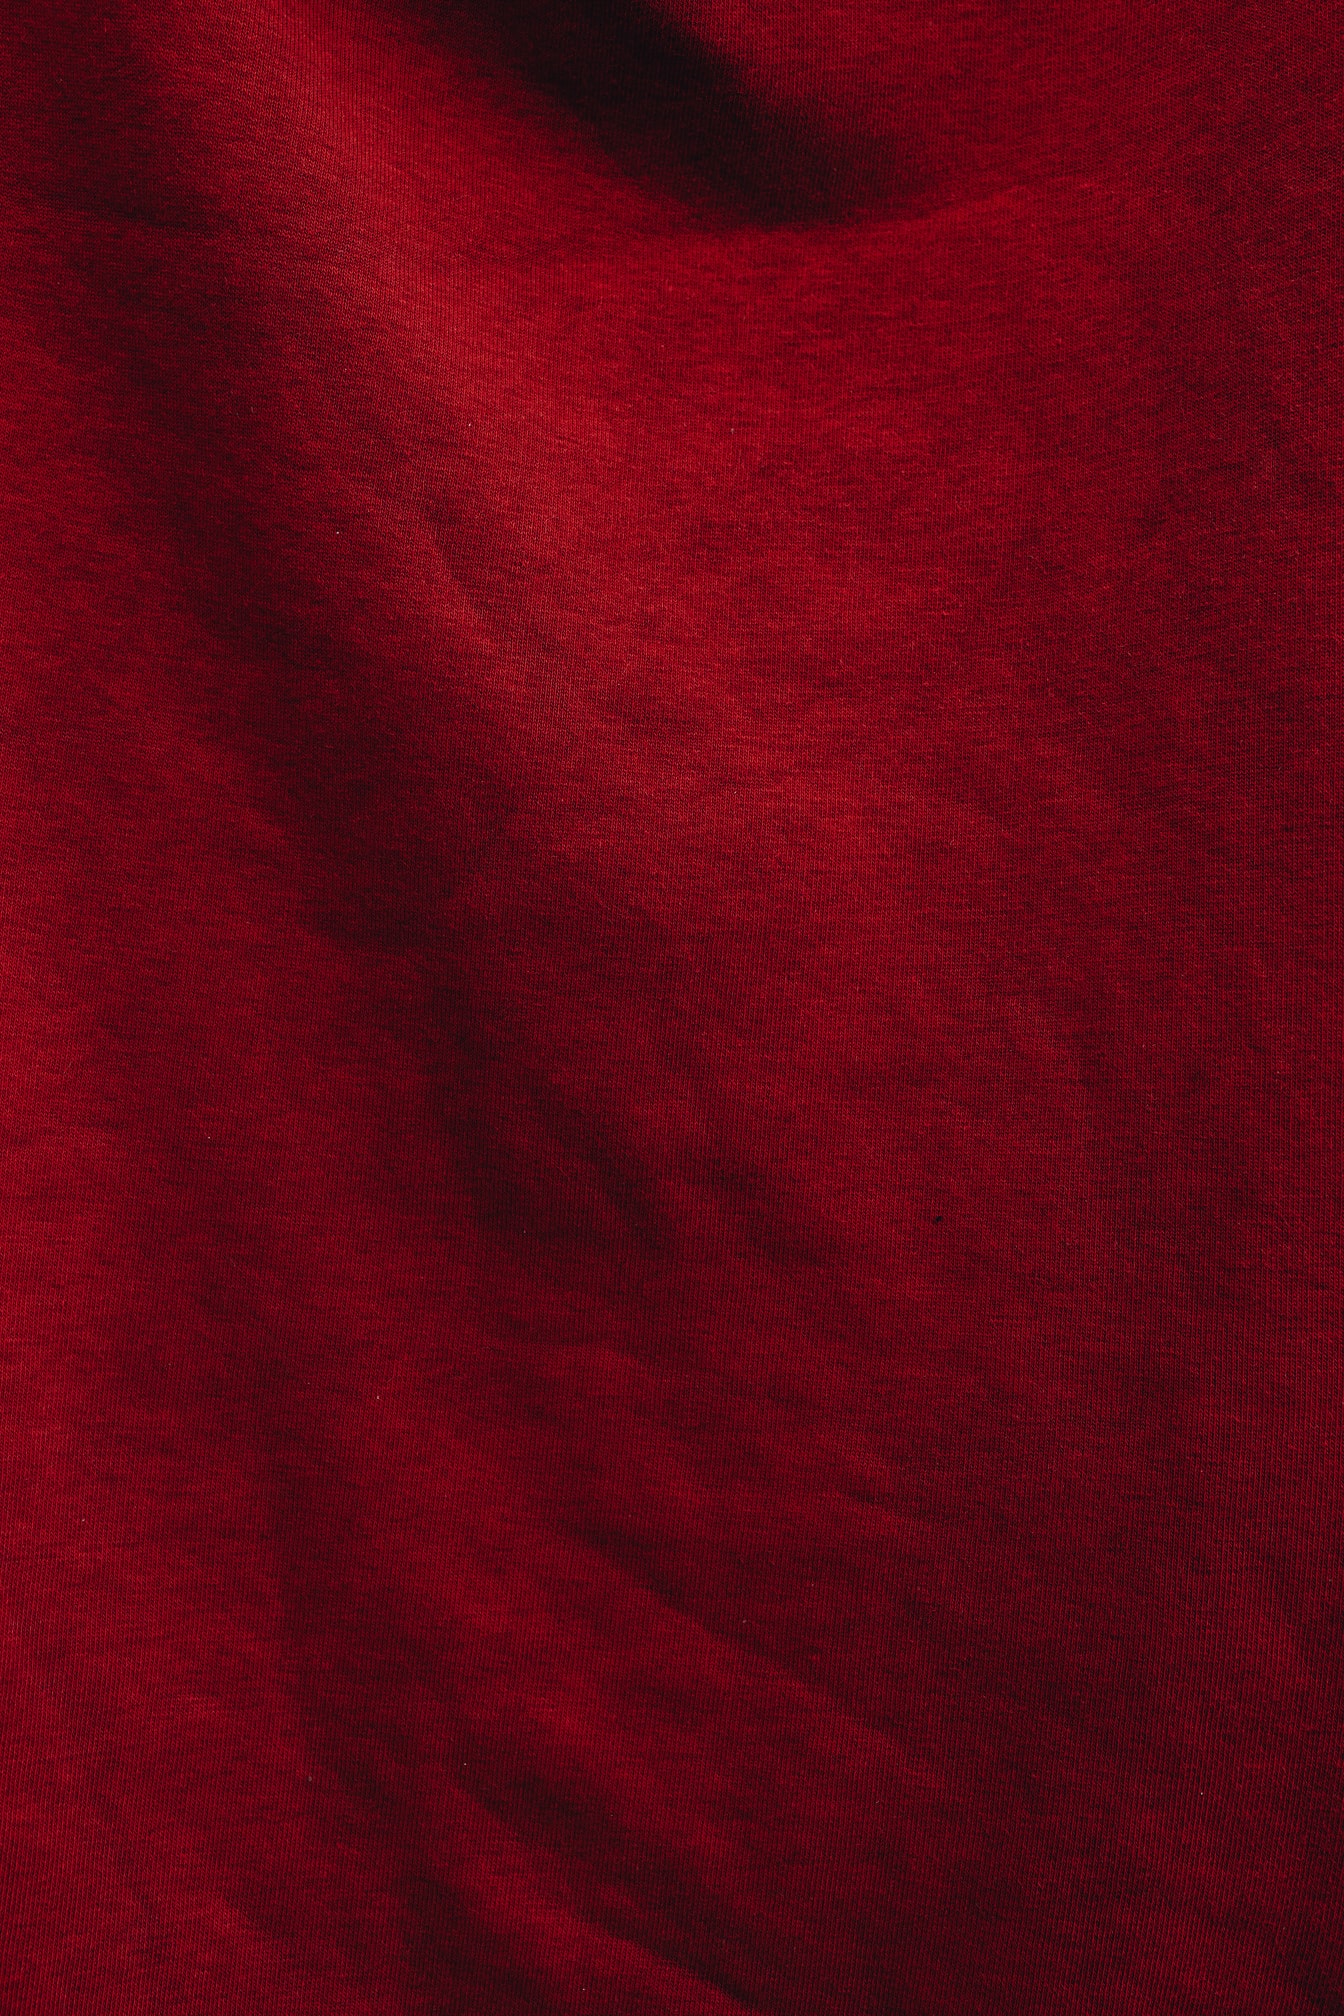 Tecido de algodão vermelho escuro na textura da sombra